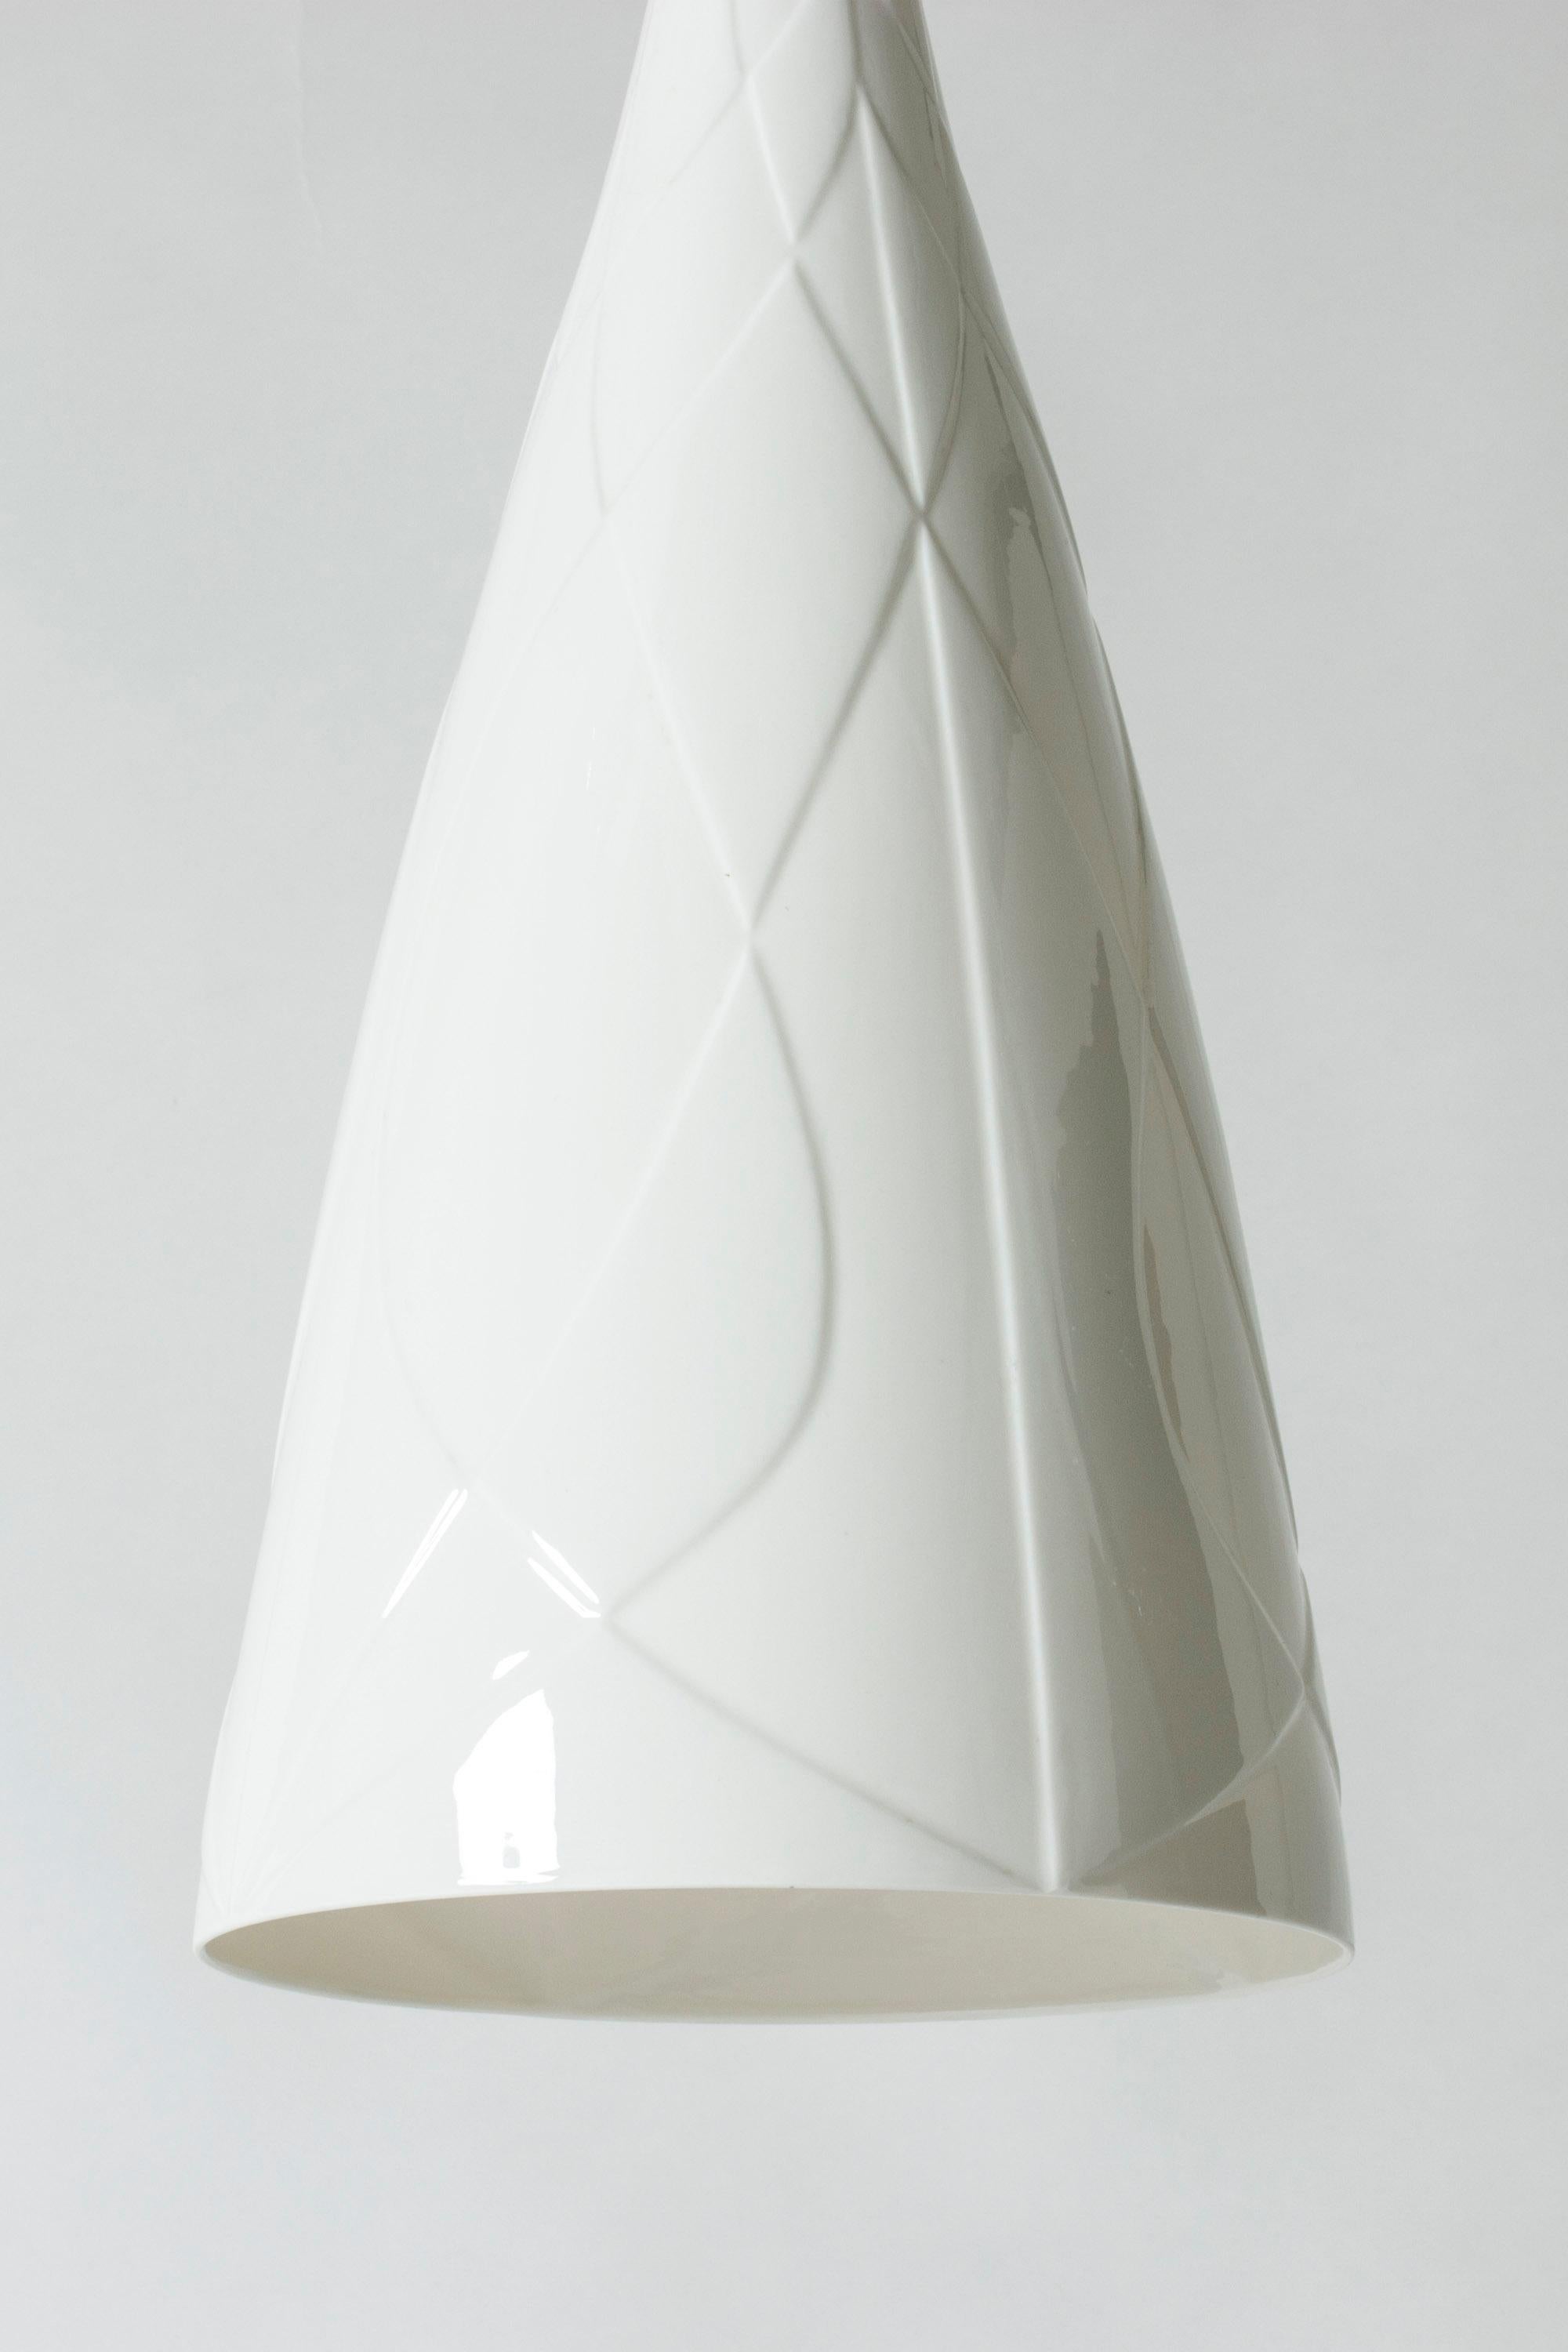 Ceramic Pendant Ceiling Lamp by Carl-Harry Stålhane for Rörstrand, Sweden, 1950s 2